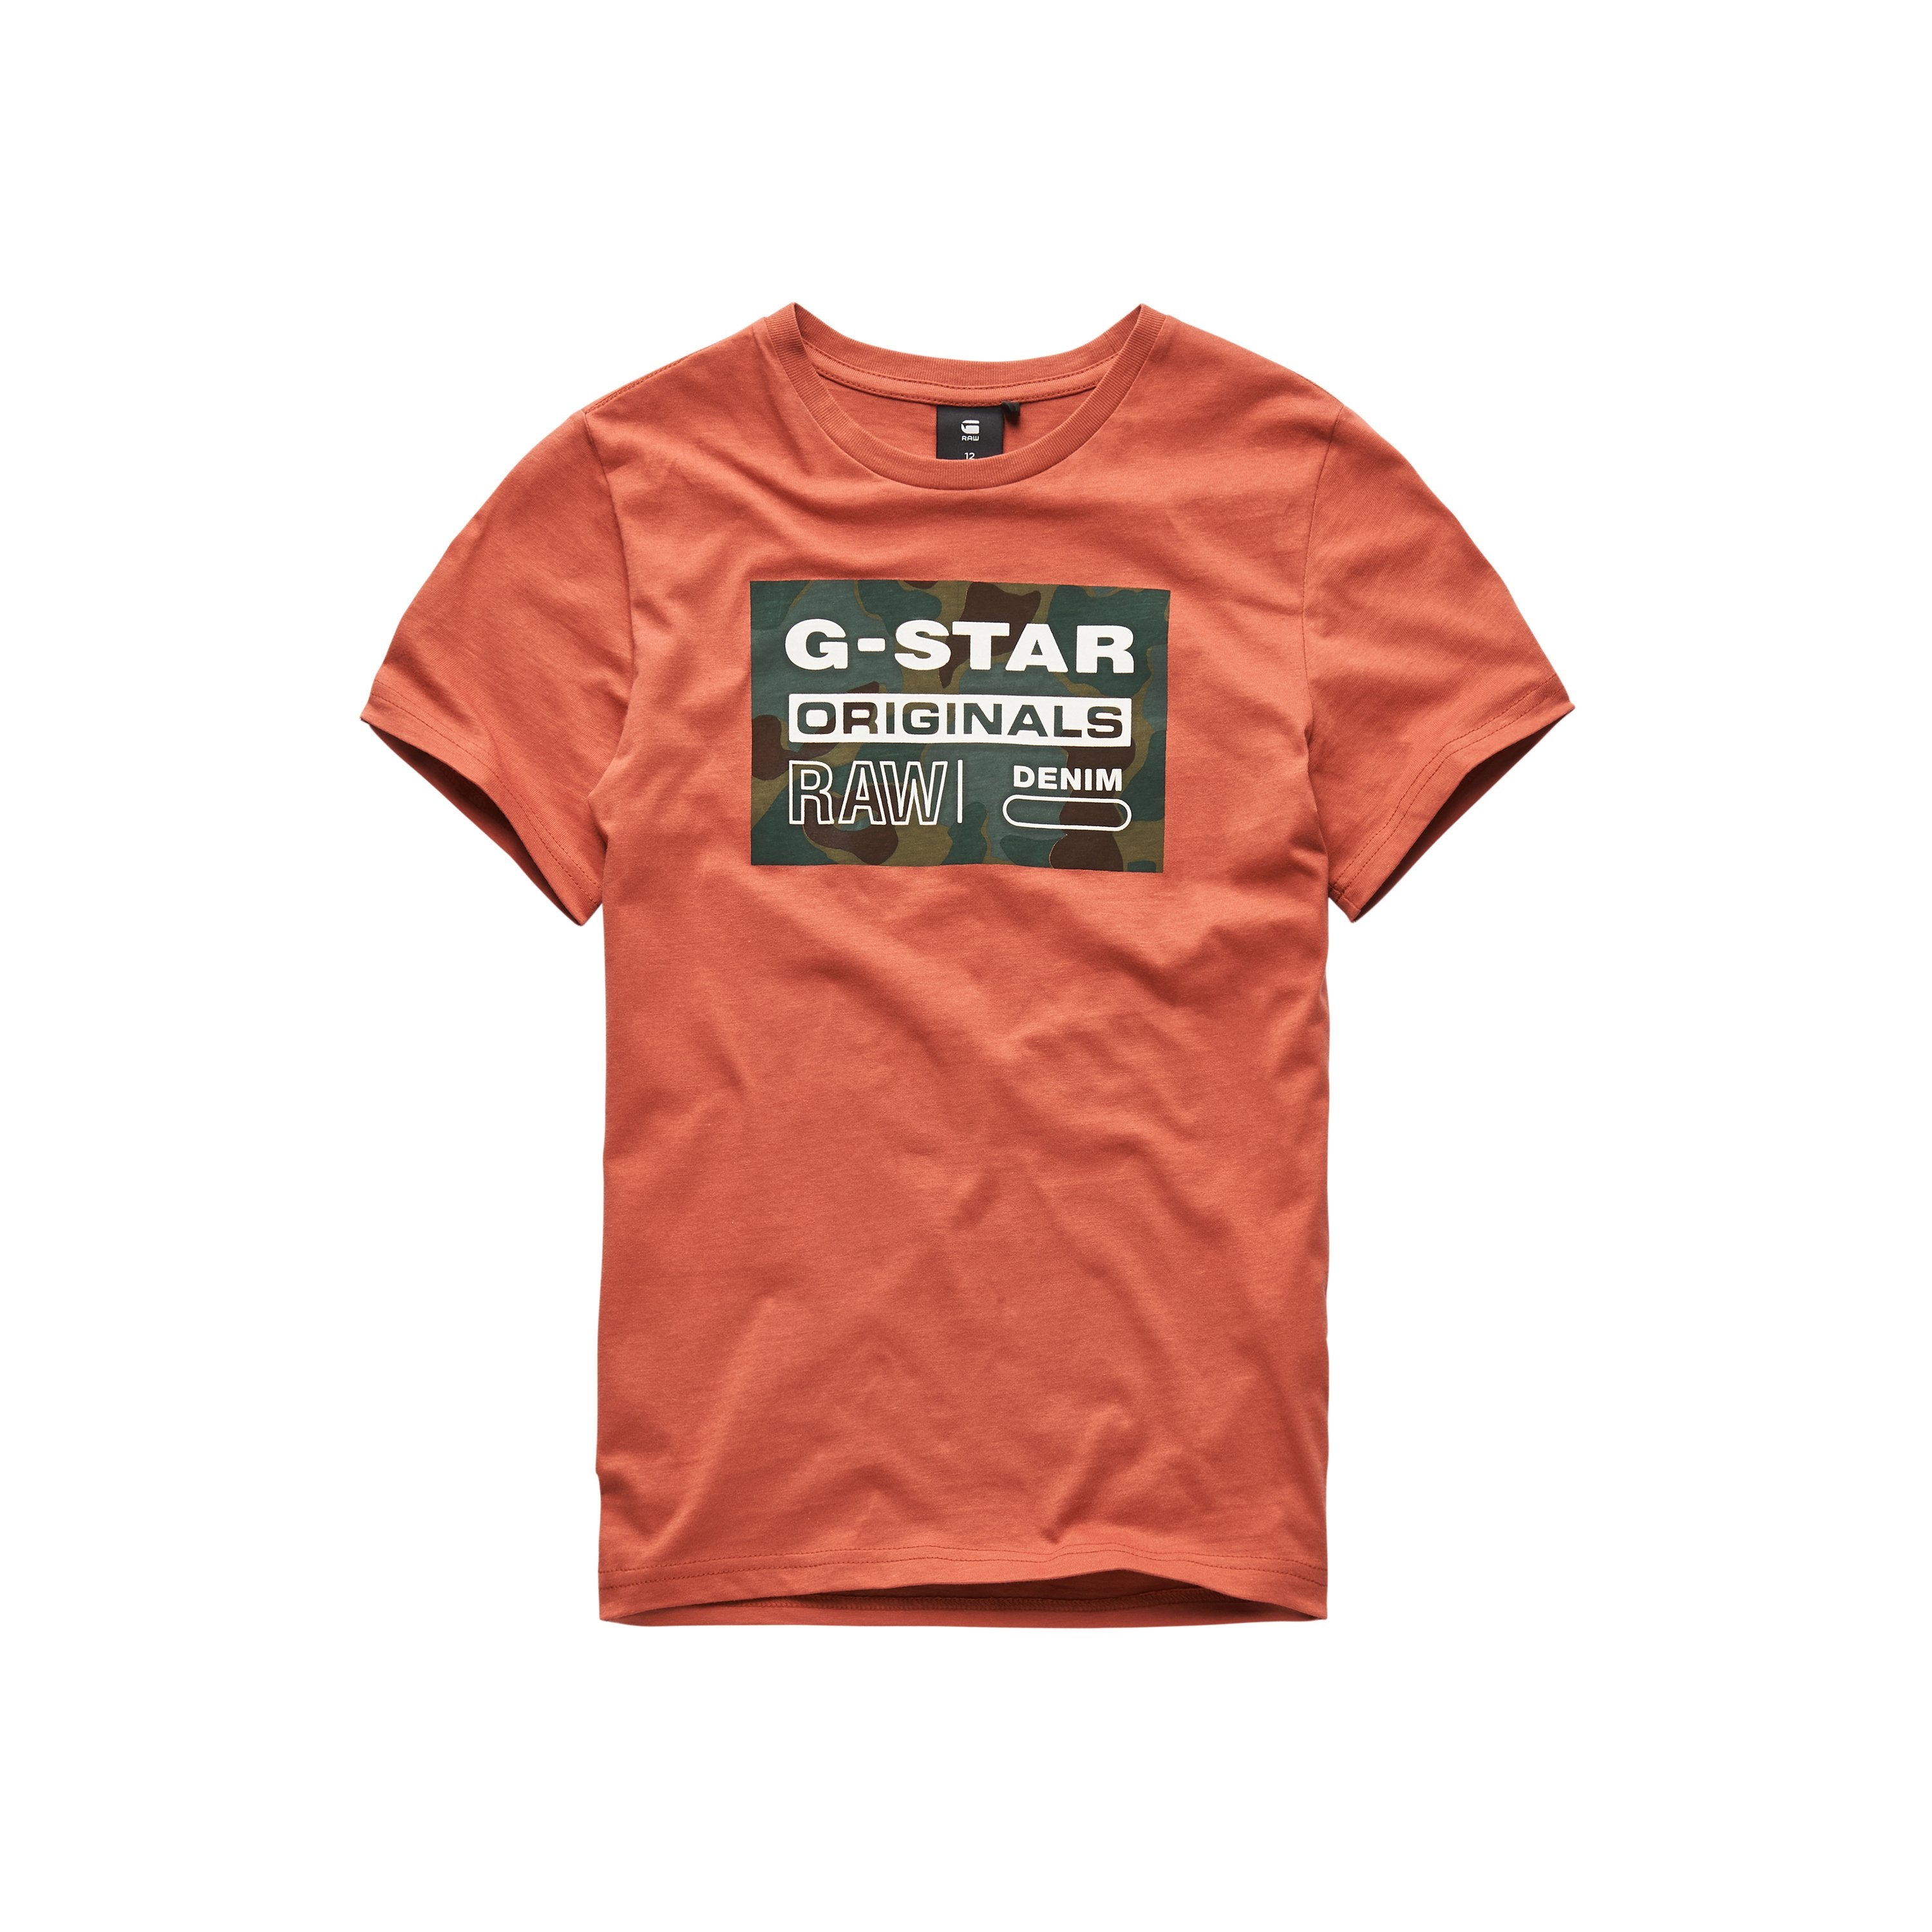 Jongens Tee Shirt van G-Star Raw in de kleur Tea Pum in maat 128.